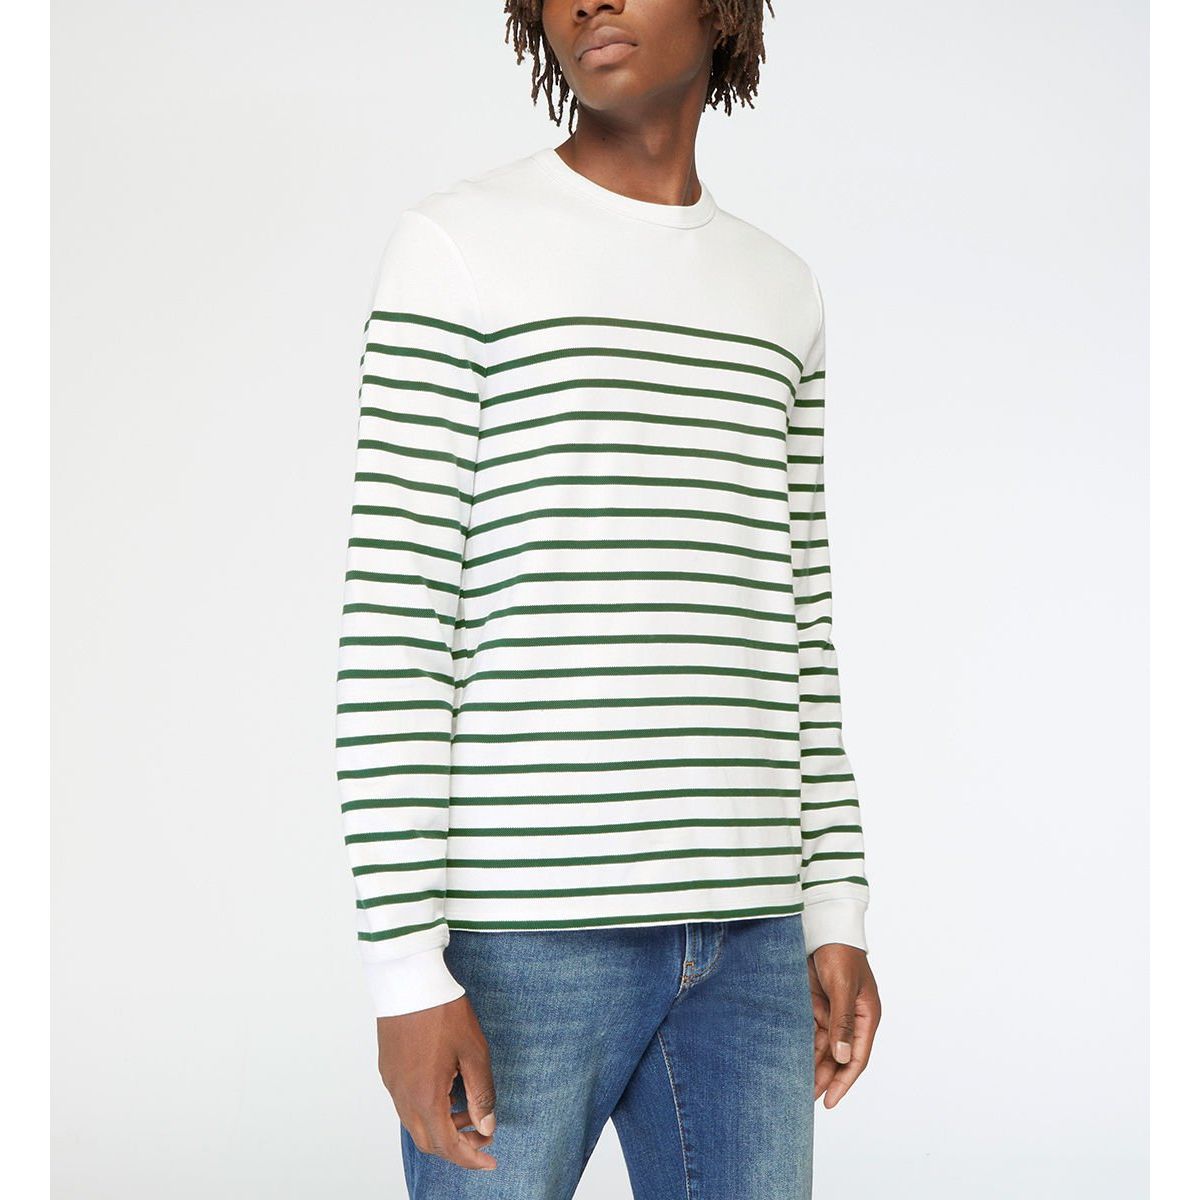 Galeries Lafayette Garçon Vêtements Tops & T-shirts T-shirts Manches longues Polo coton à manches longues Vert 